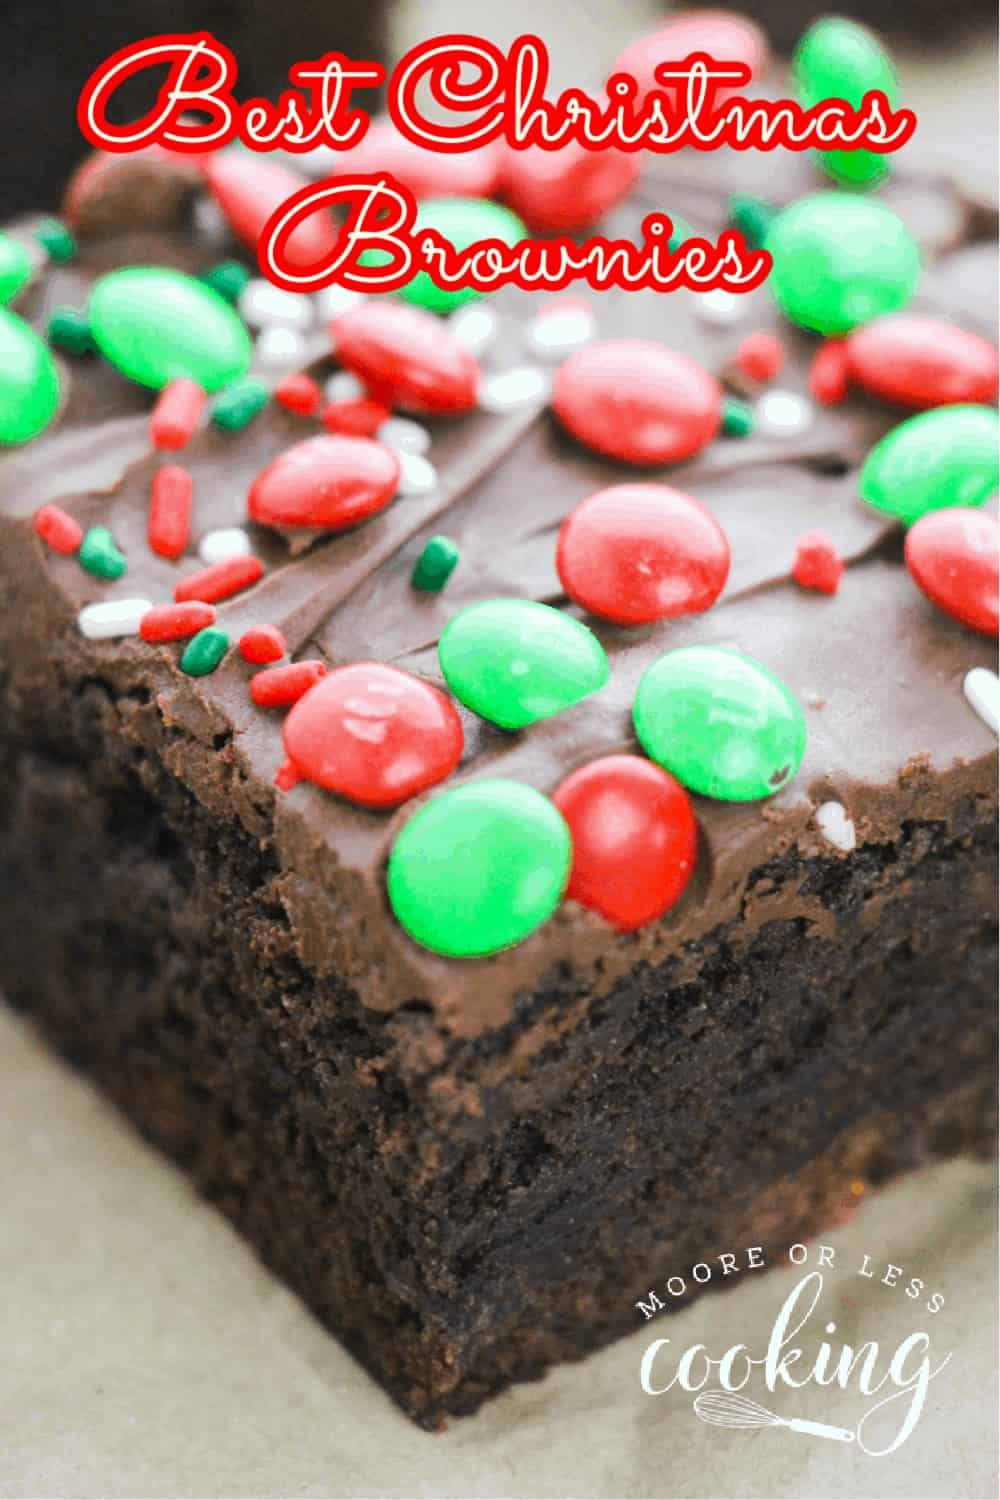 Best Christmas Brownies